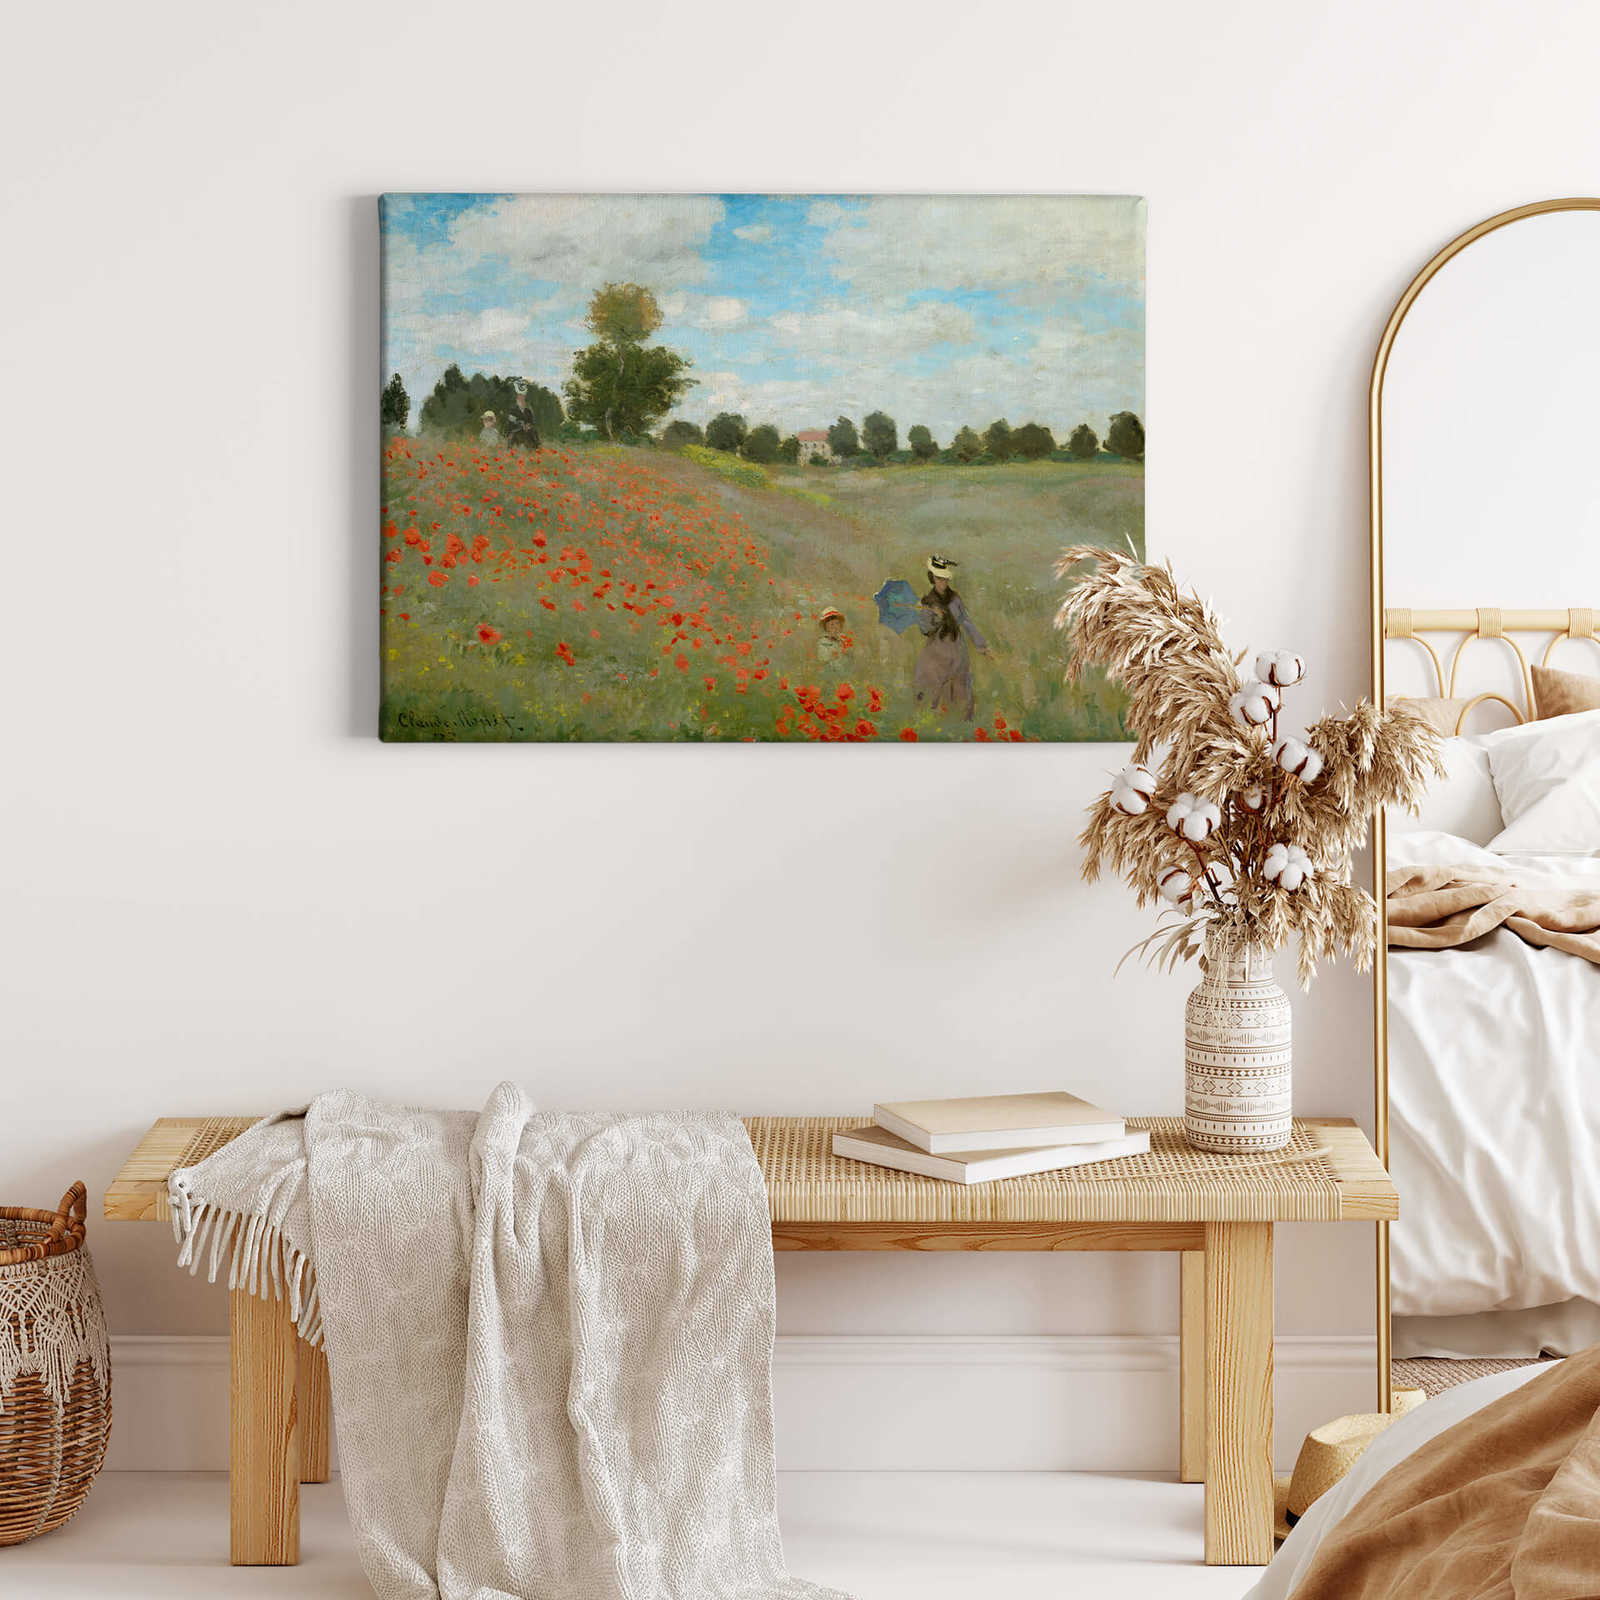             Monet Canvas schilderij "Klaprozenveld bij Argenteuil" - 0.70 m x 0.50 m
        